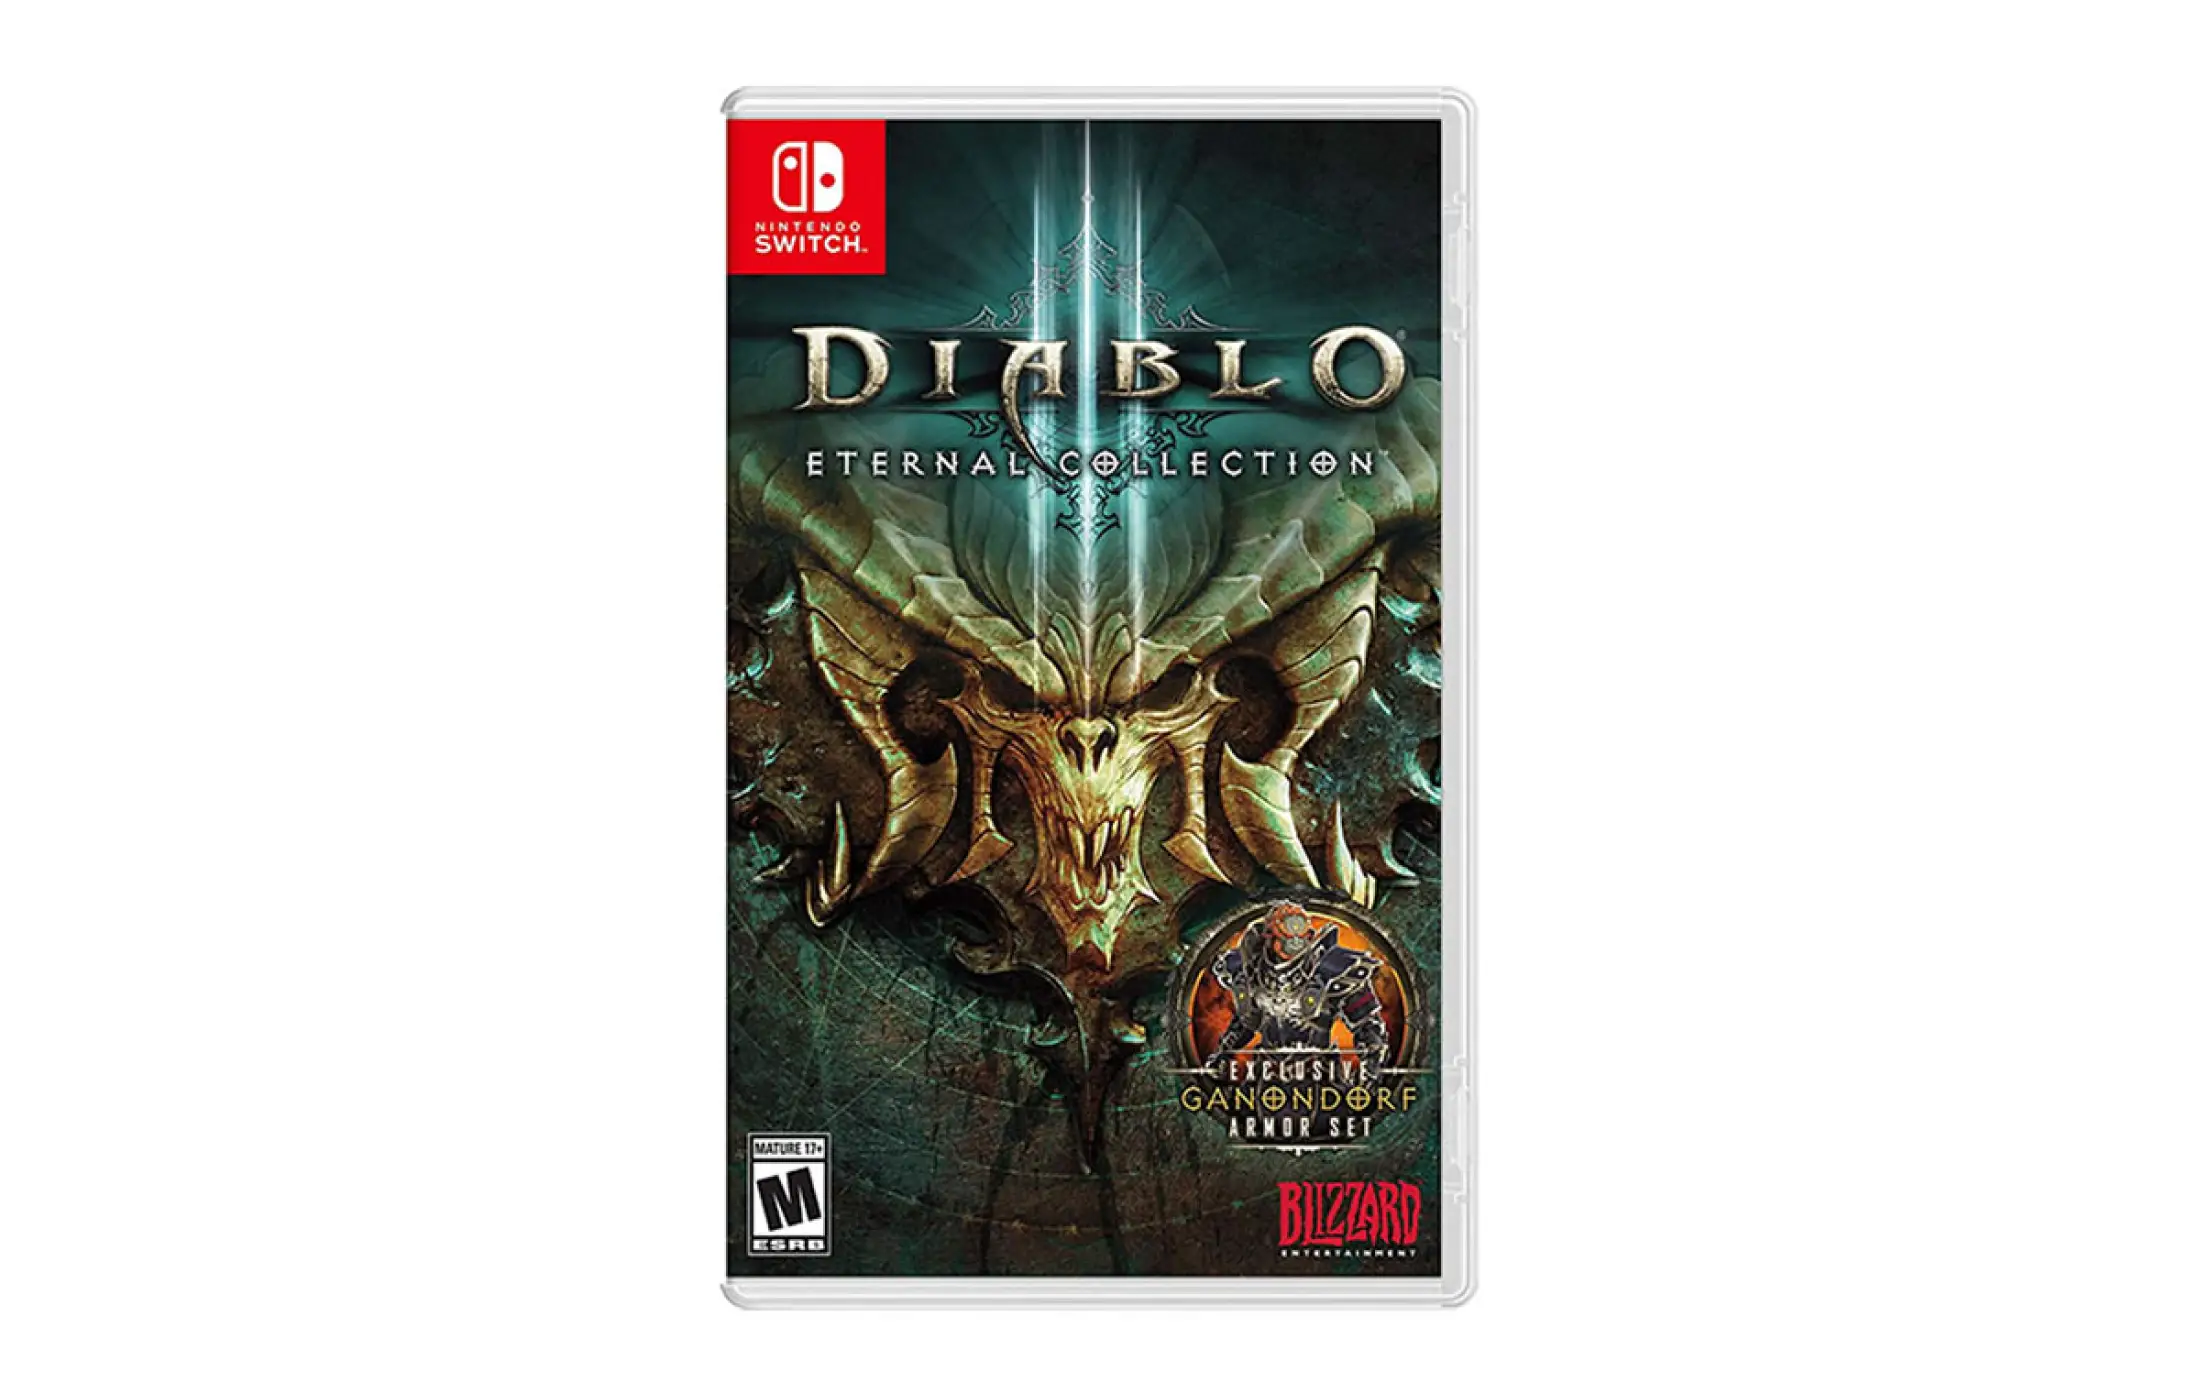 Nintendo switch diablo 3. Diablo 3 Nintendo Switch. Diablo 3 Eternal collection. Diablo III: Eternal collection Nintendo. Диабло 3 свитч.